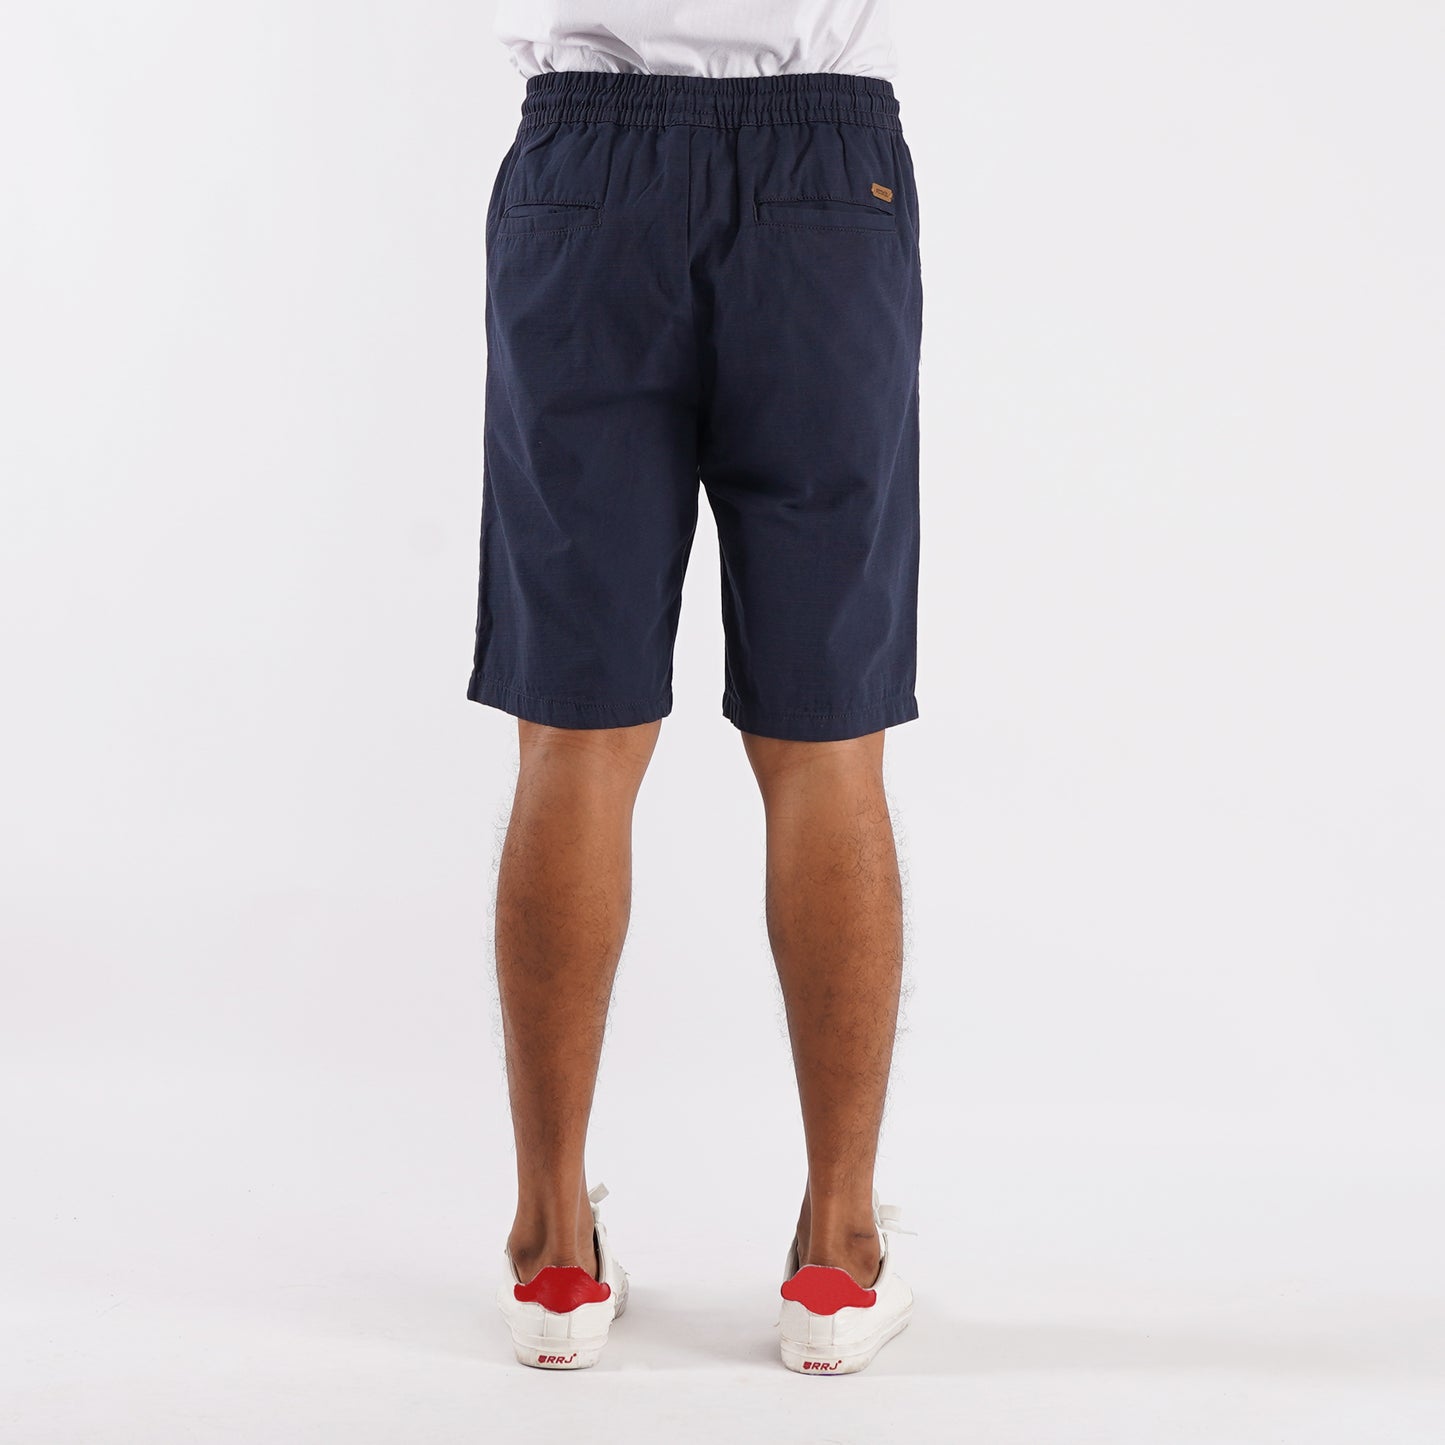 Petrol Basic Non-Denim Jogger Shorts for Men Regular Fitting Garment Wash Fabric Casual short Navy Jogger short for Men 127352 (Navy)